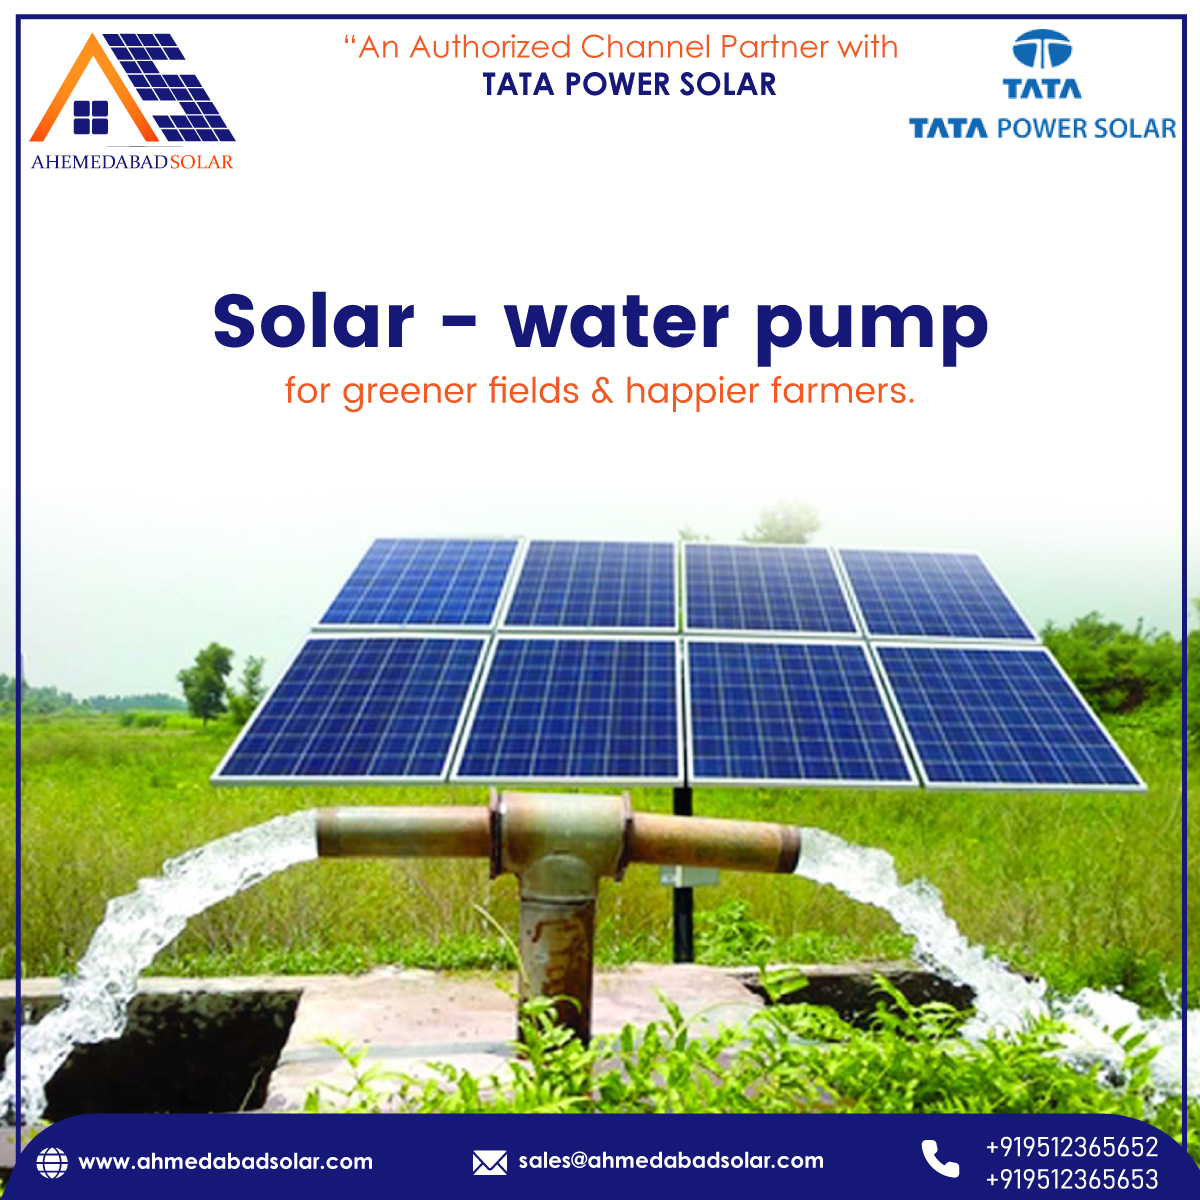 Solar water pump for greener fields & happier farmers